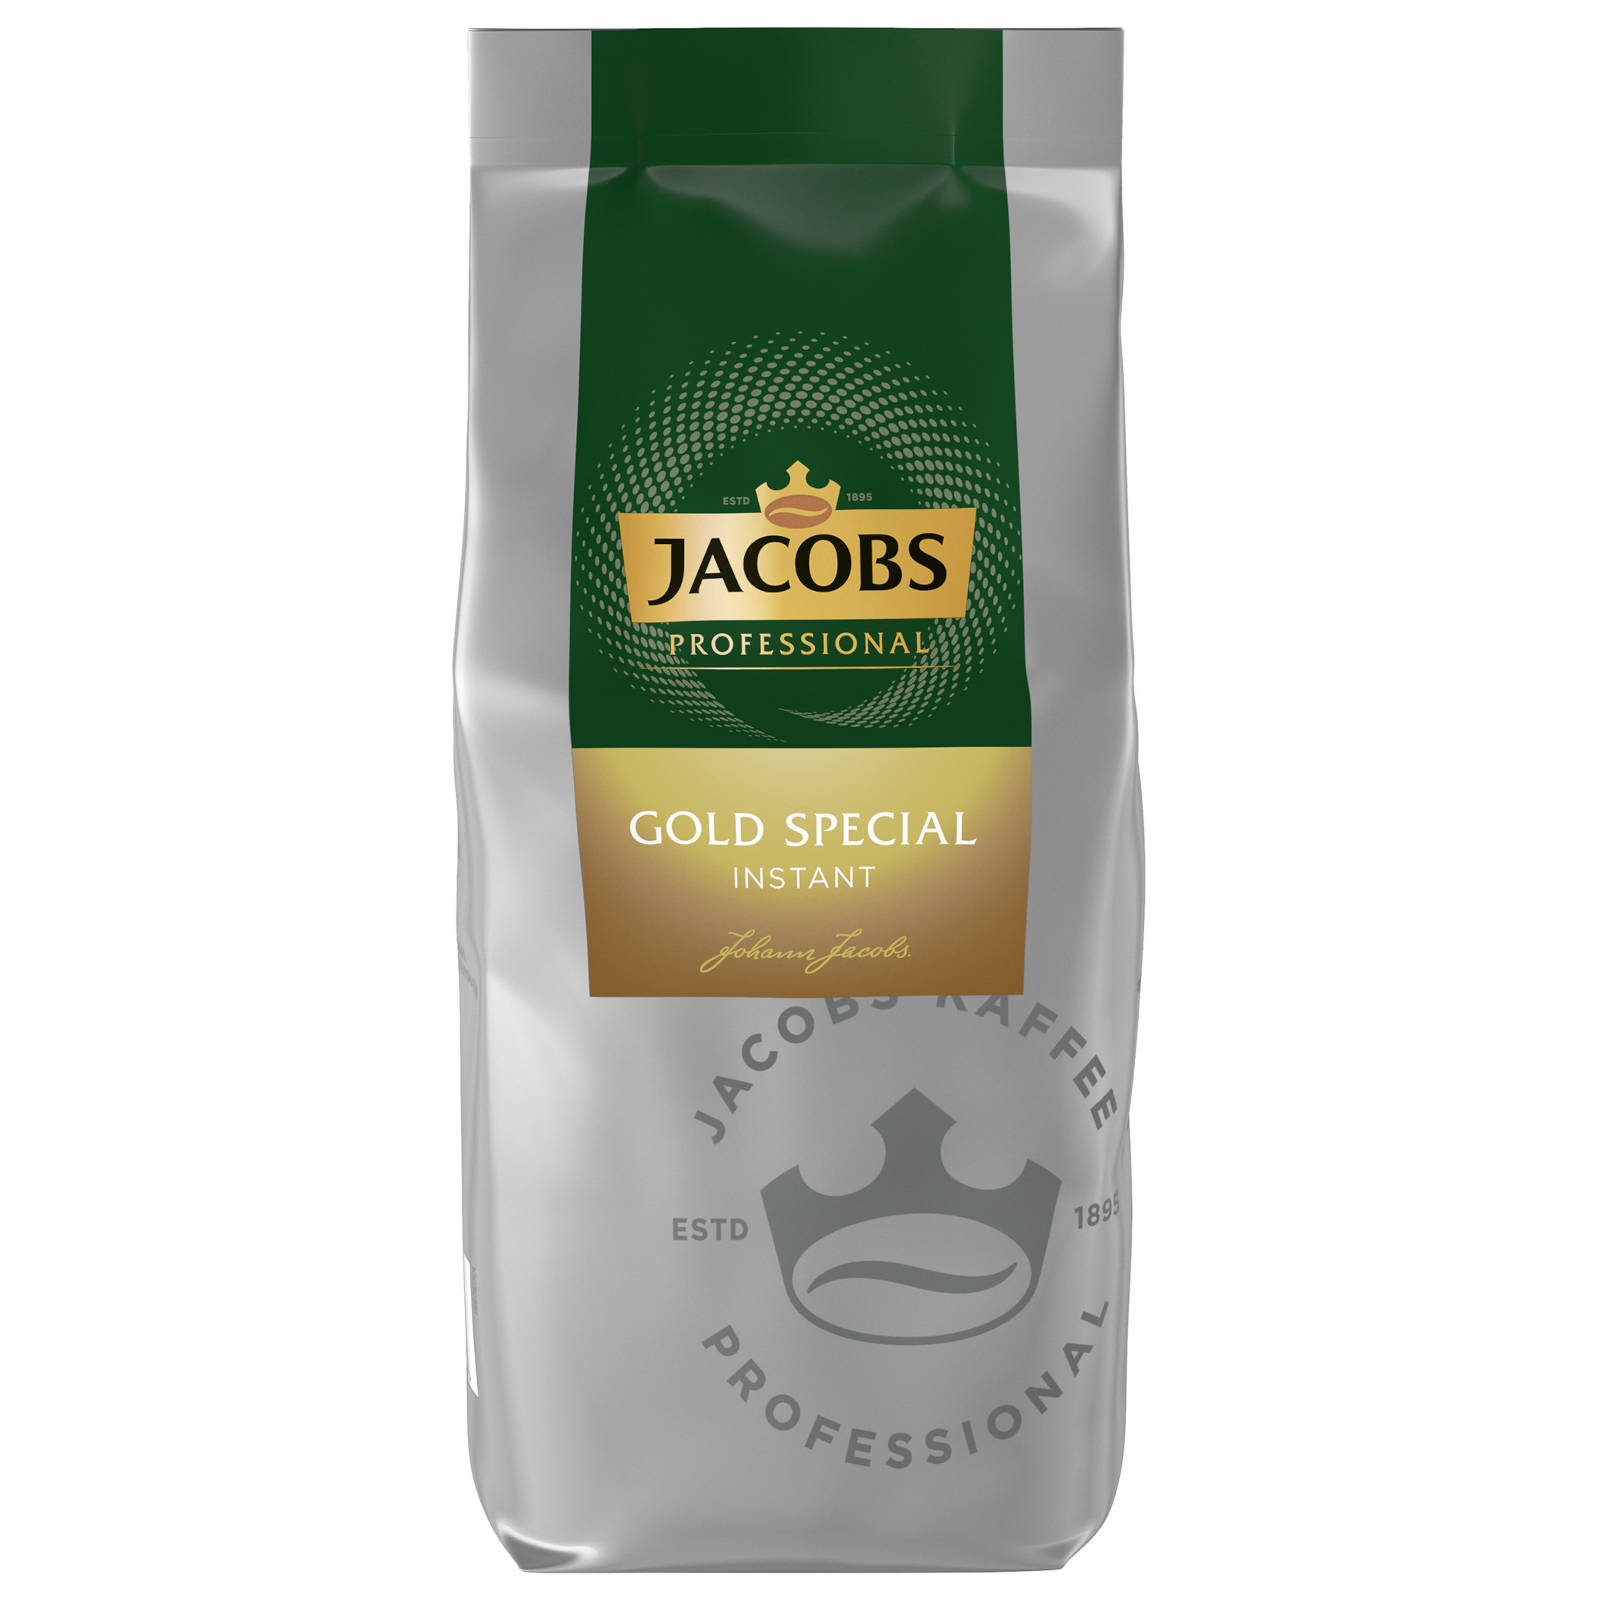 JACOBS Professiona Special 2x500 Instantkaffee auflösen, (In heißem Heißgetränkeautomaten) Gold g Wasser